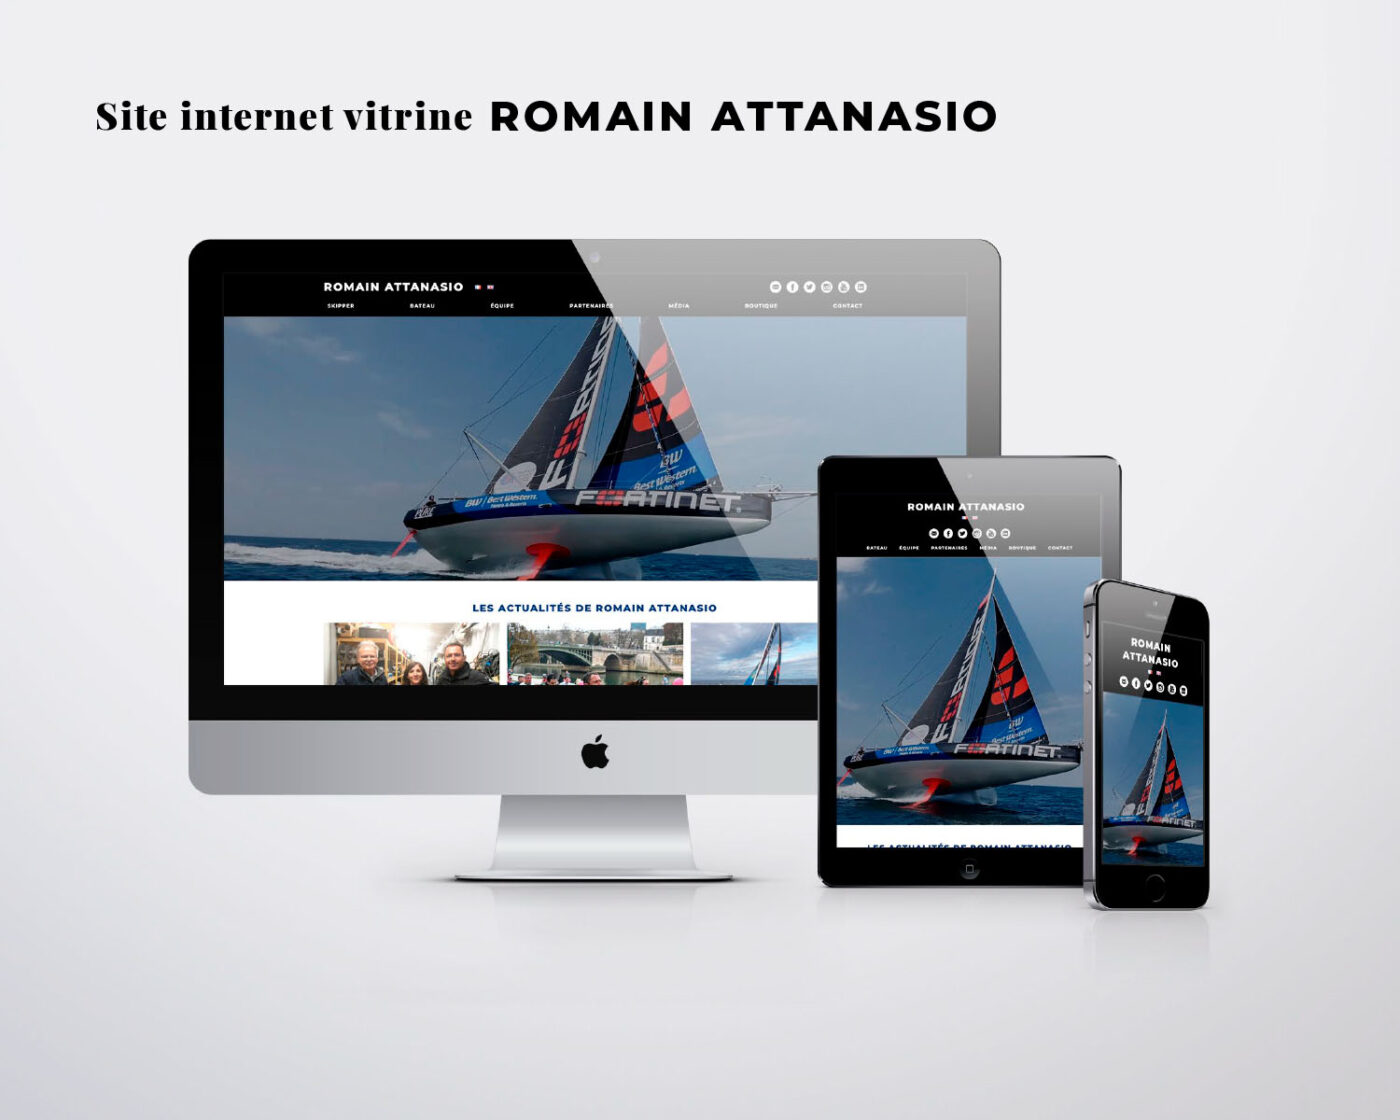 Création graphique et développement technique du site internet vitrine romainattanasio.fr